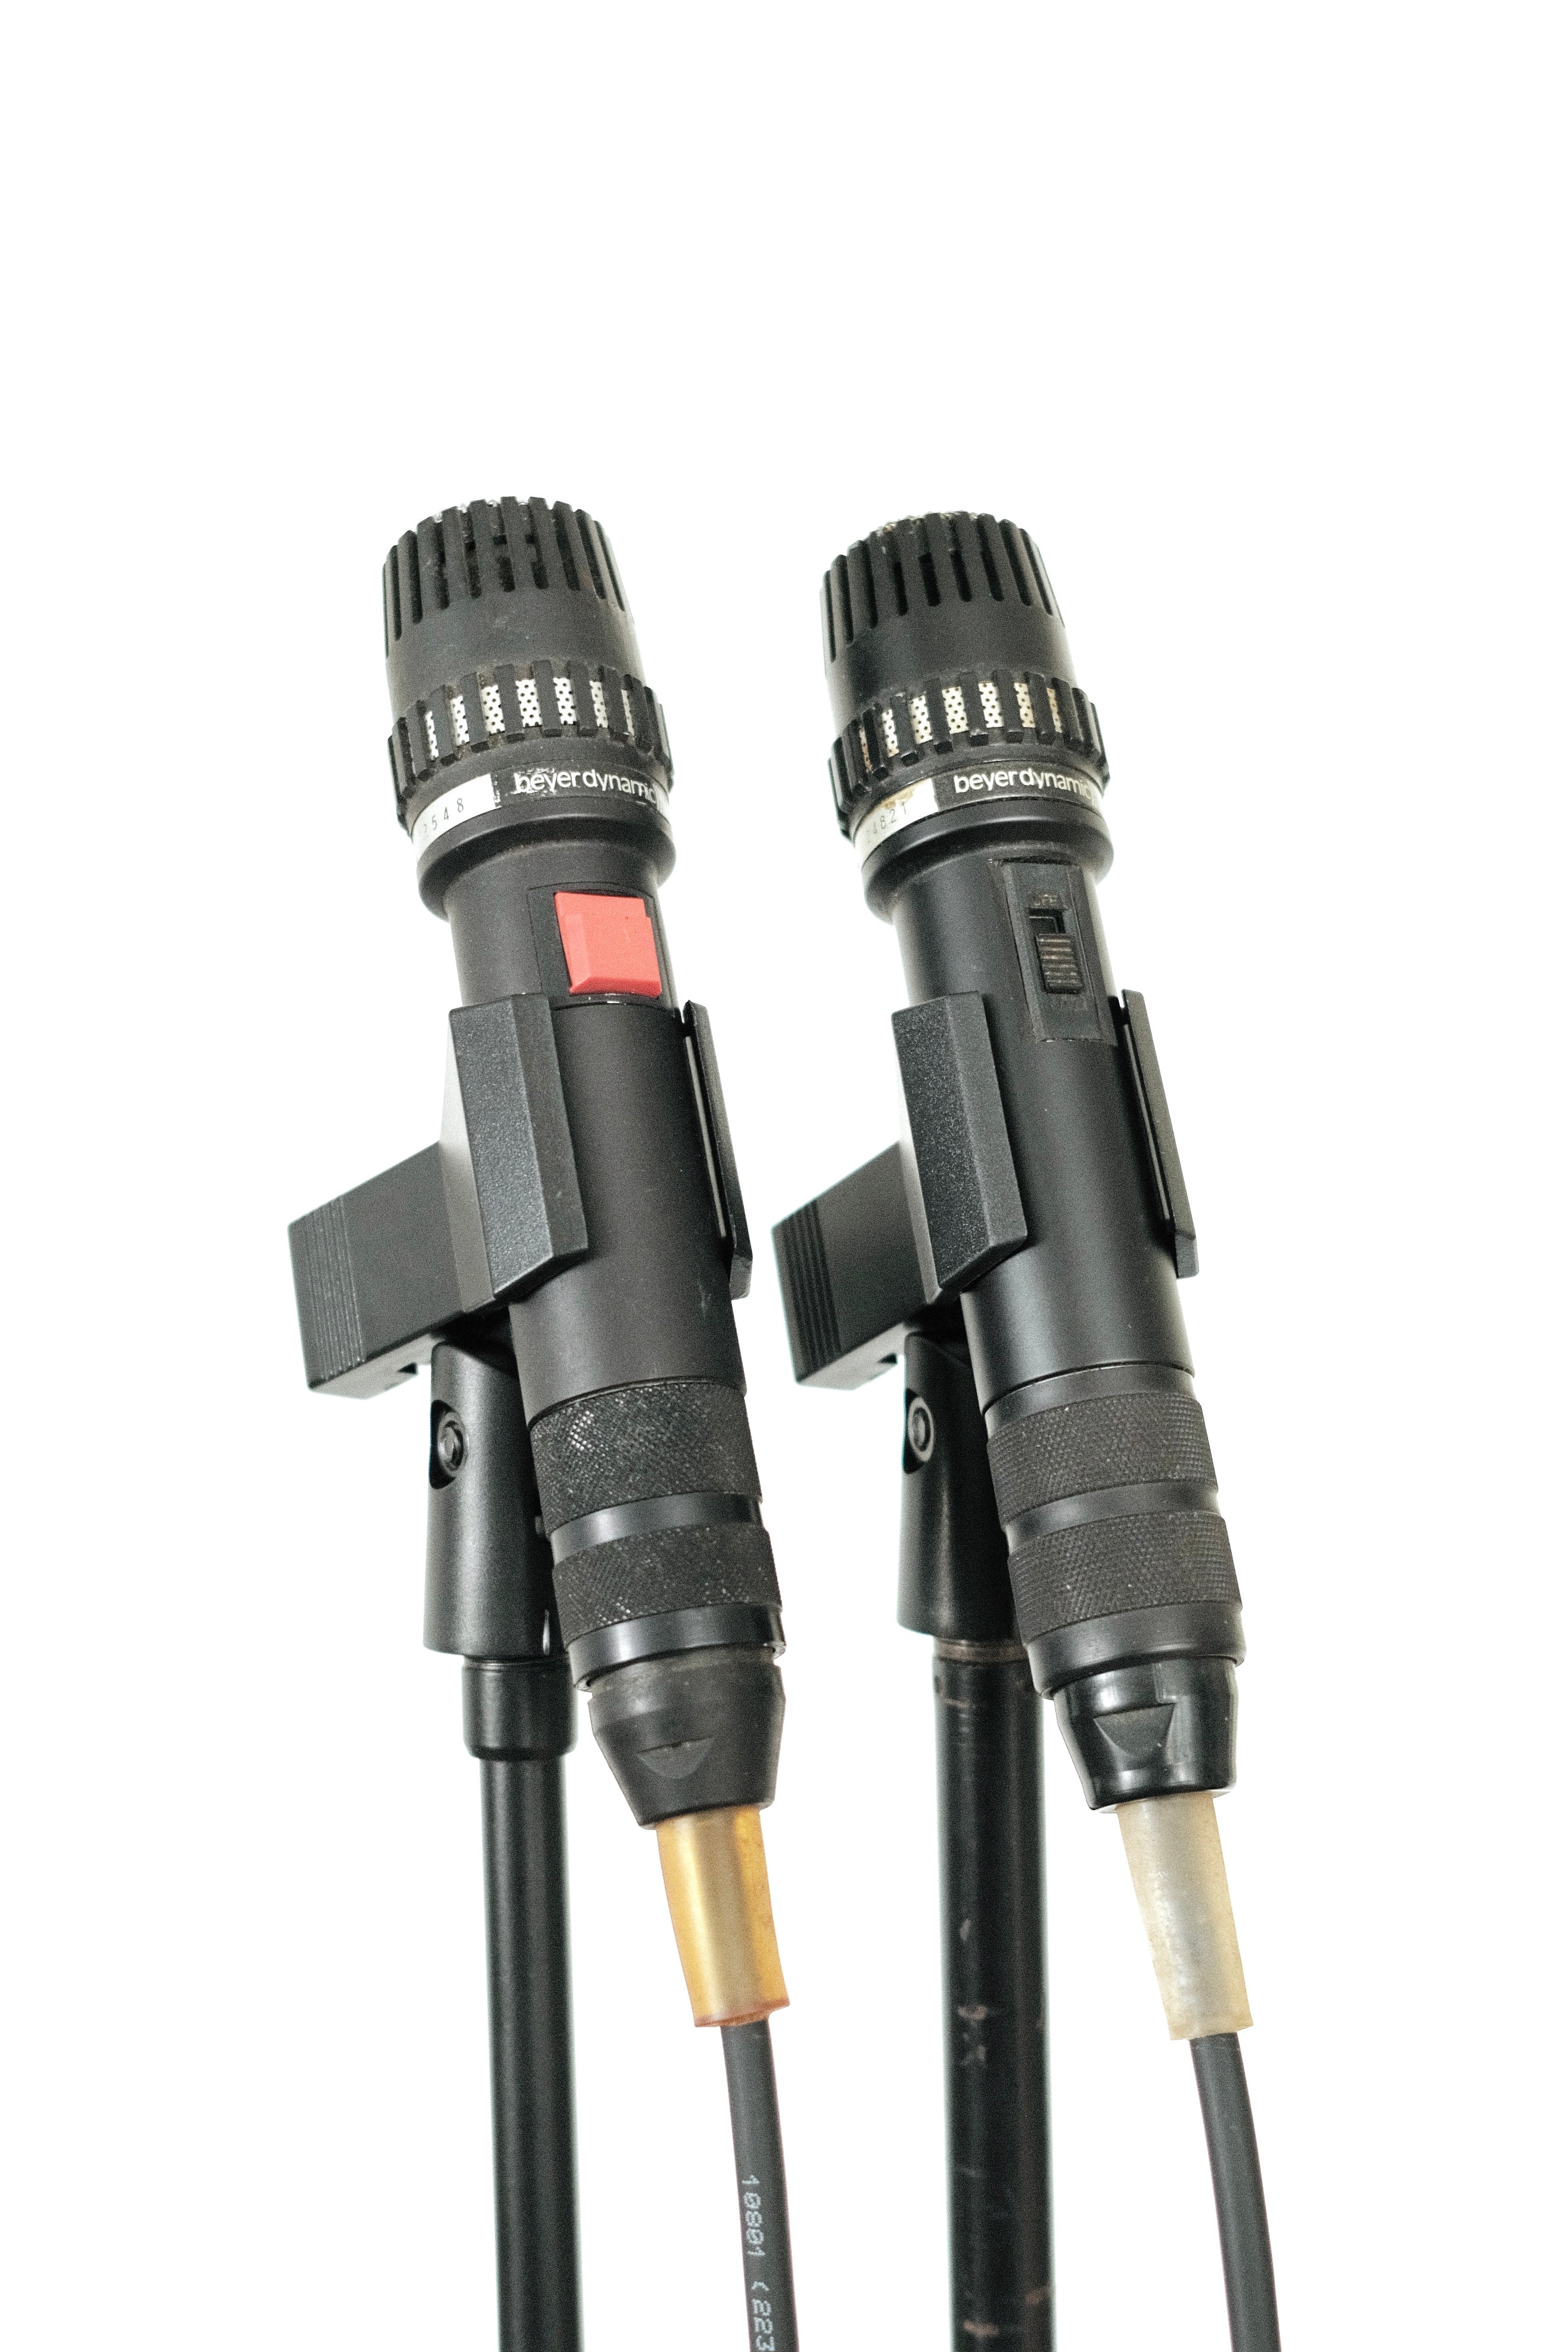 Beyerdynamic M411 Dynamic Microphone